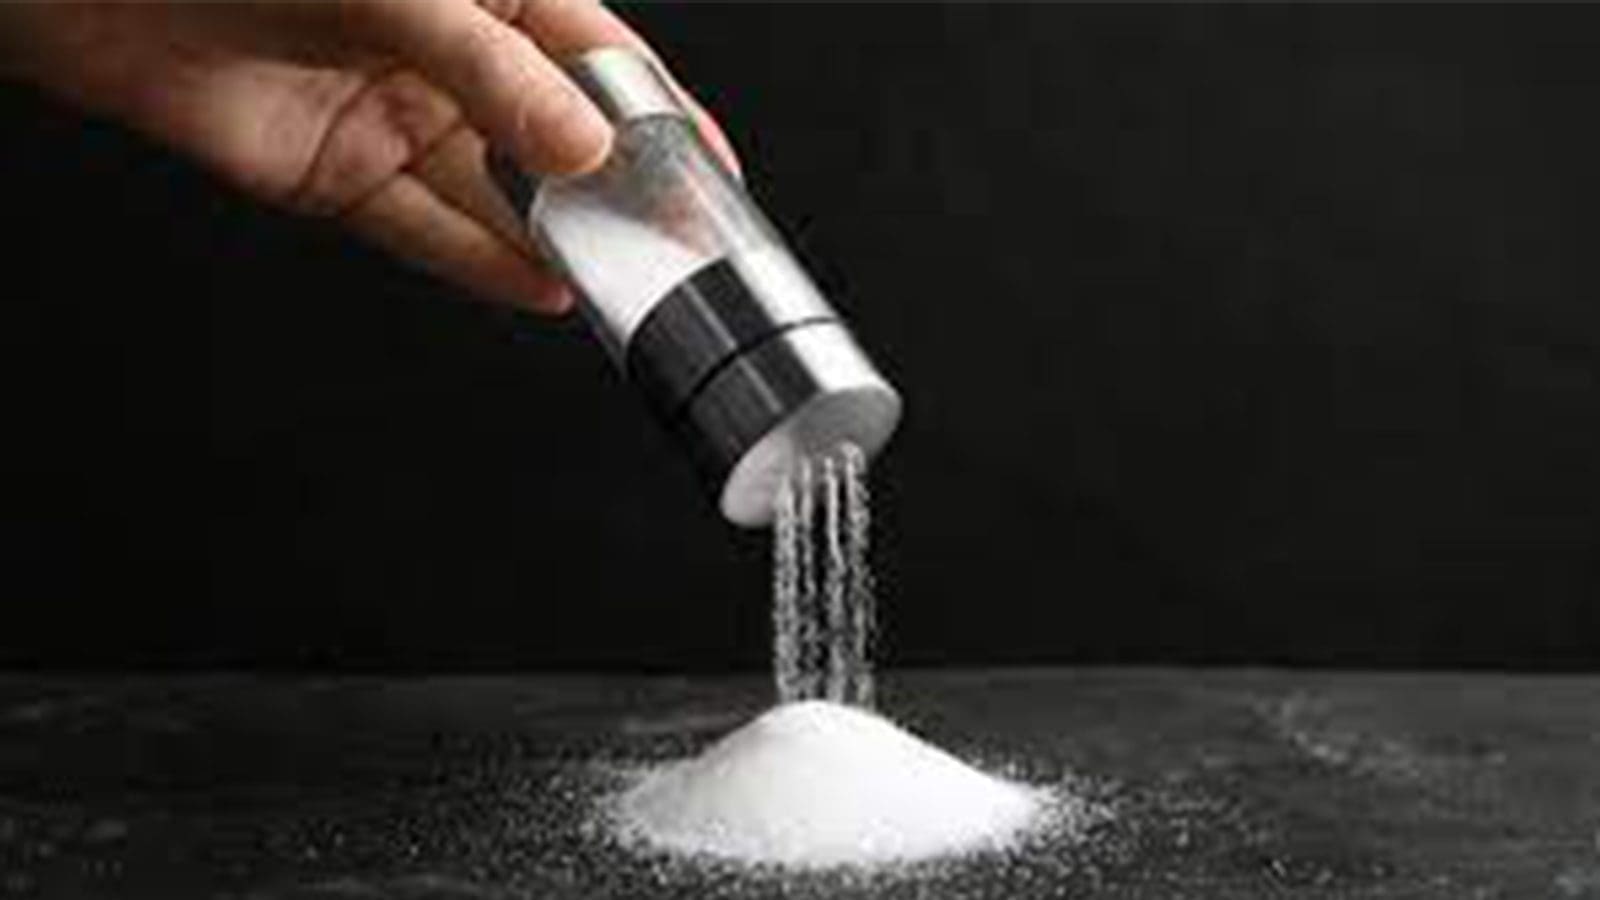 Study links loosening regulations to increased salt intake, heart disease deaths